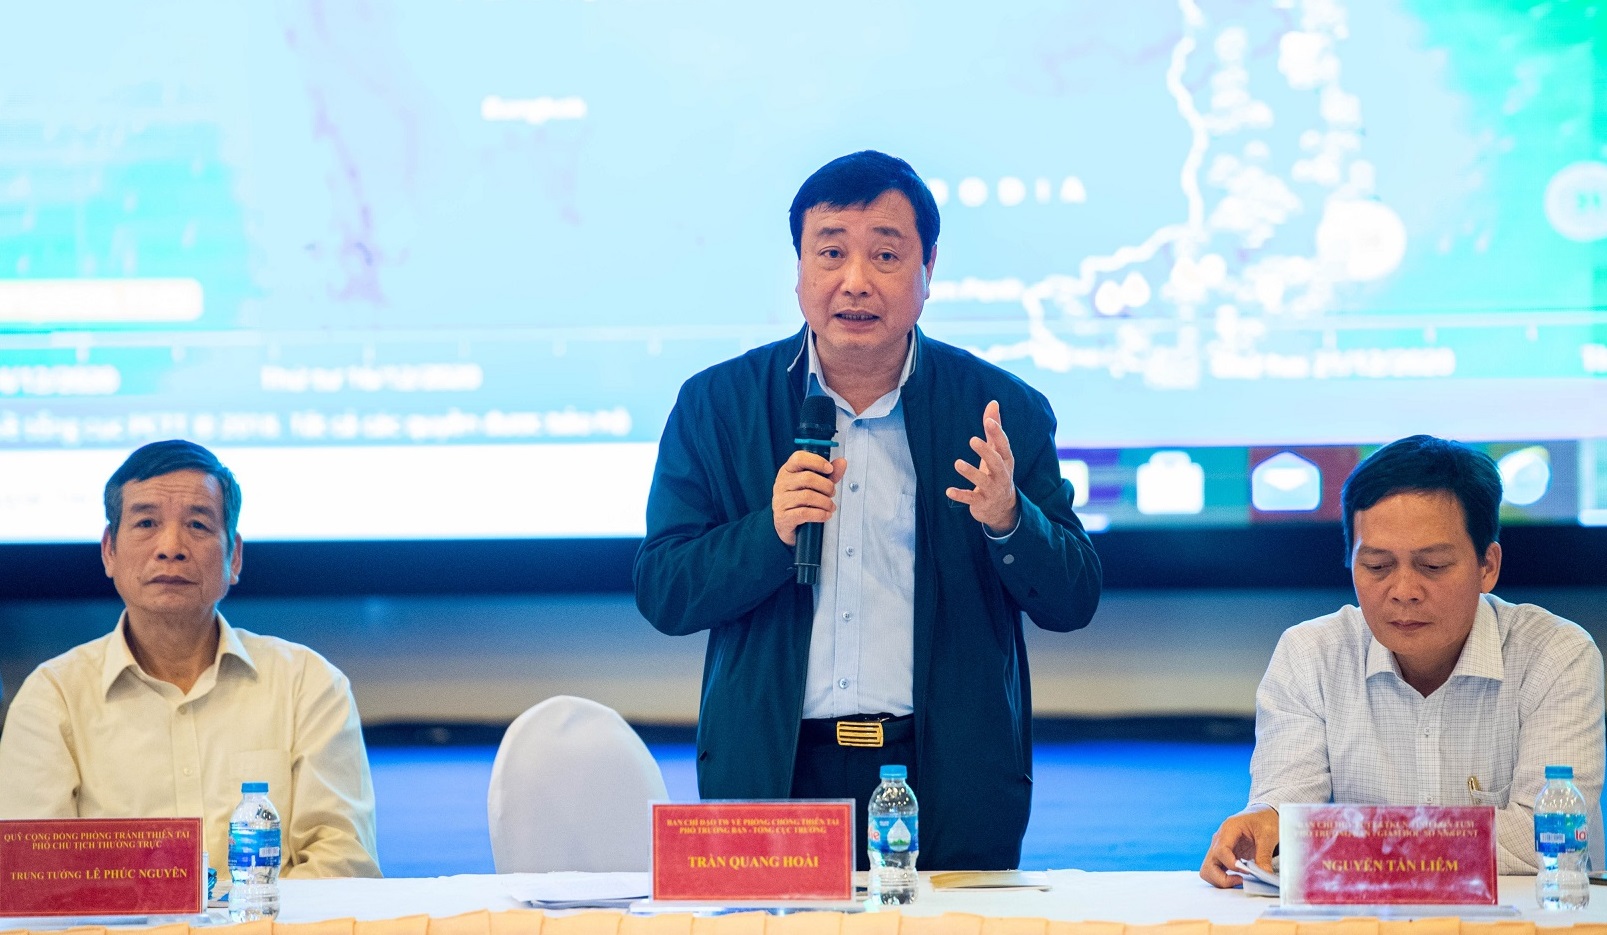 Ông Trần Quang Hoài, Phó Trưởng Ban chỉ đạo Trung ương về PCTT,Tổng cục trưởng Tổng cục PCTT phát biểu tại Hội nghị